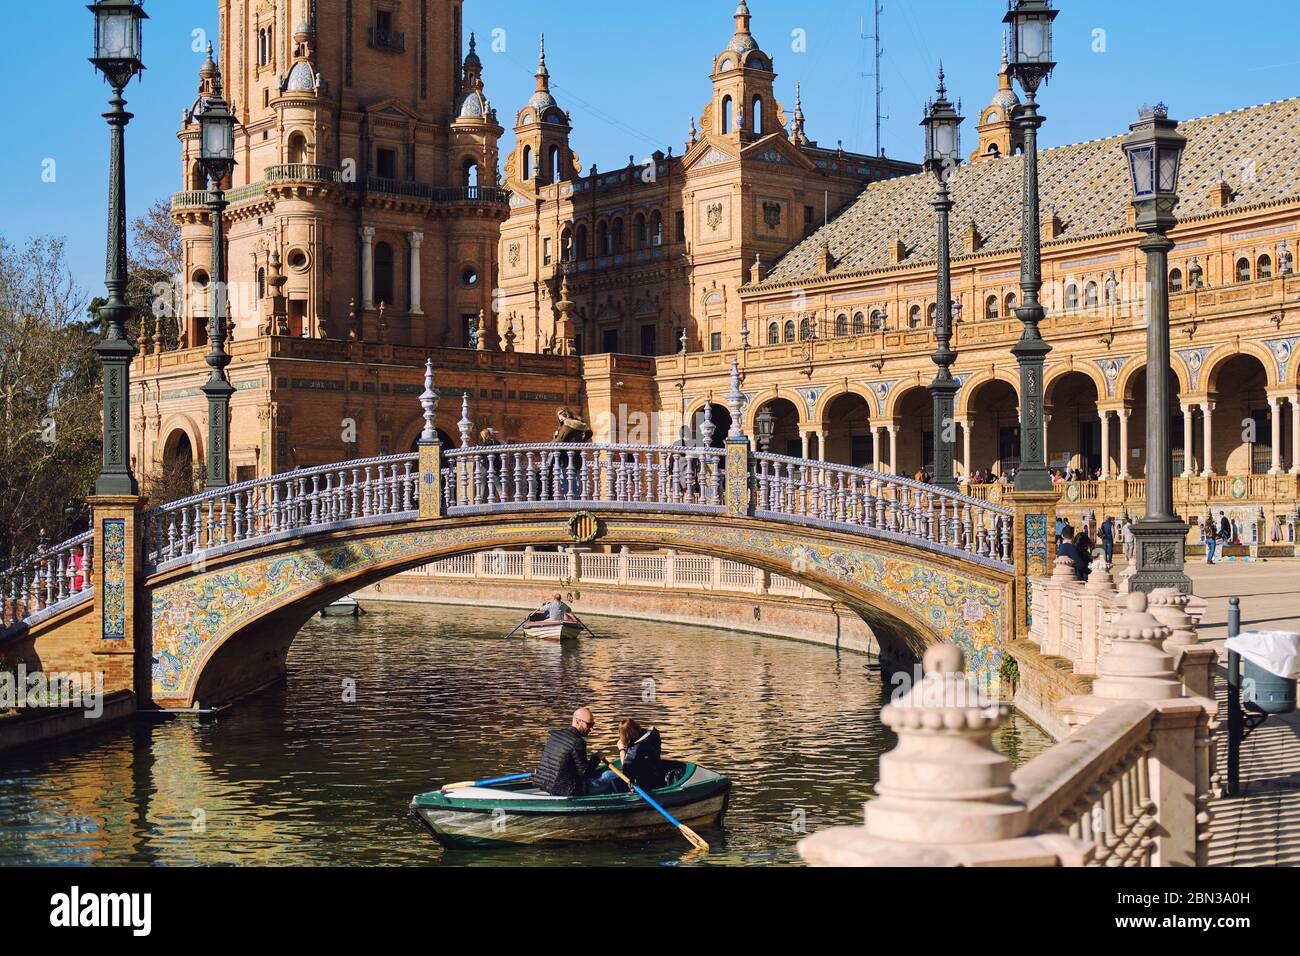 Siviglia, Spagna: 23 dicembre 2019: I turisti vanno in barca a remi intorno all'acqua del fiume Guadalquivir in Plaza de Espana. Giorno di sole, Siviglia, Spagna Foto Stock